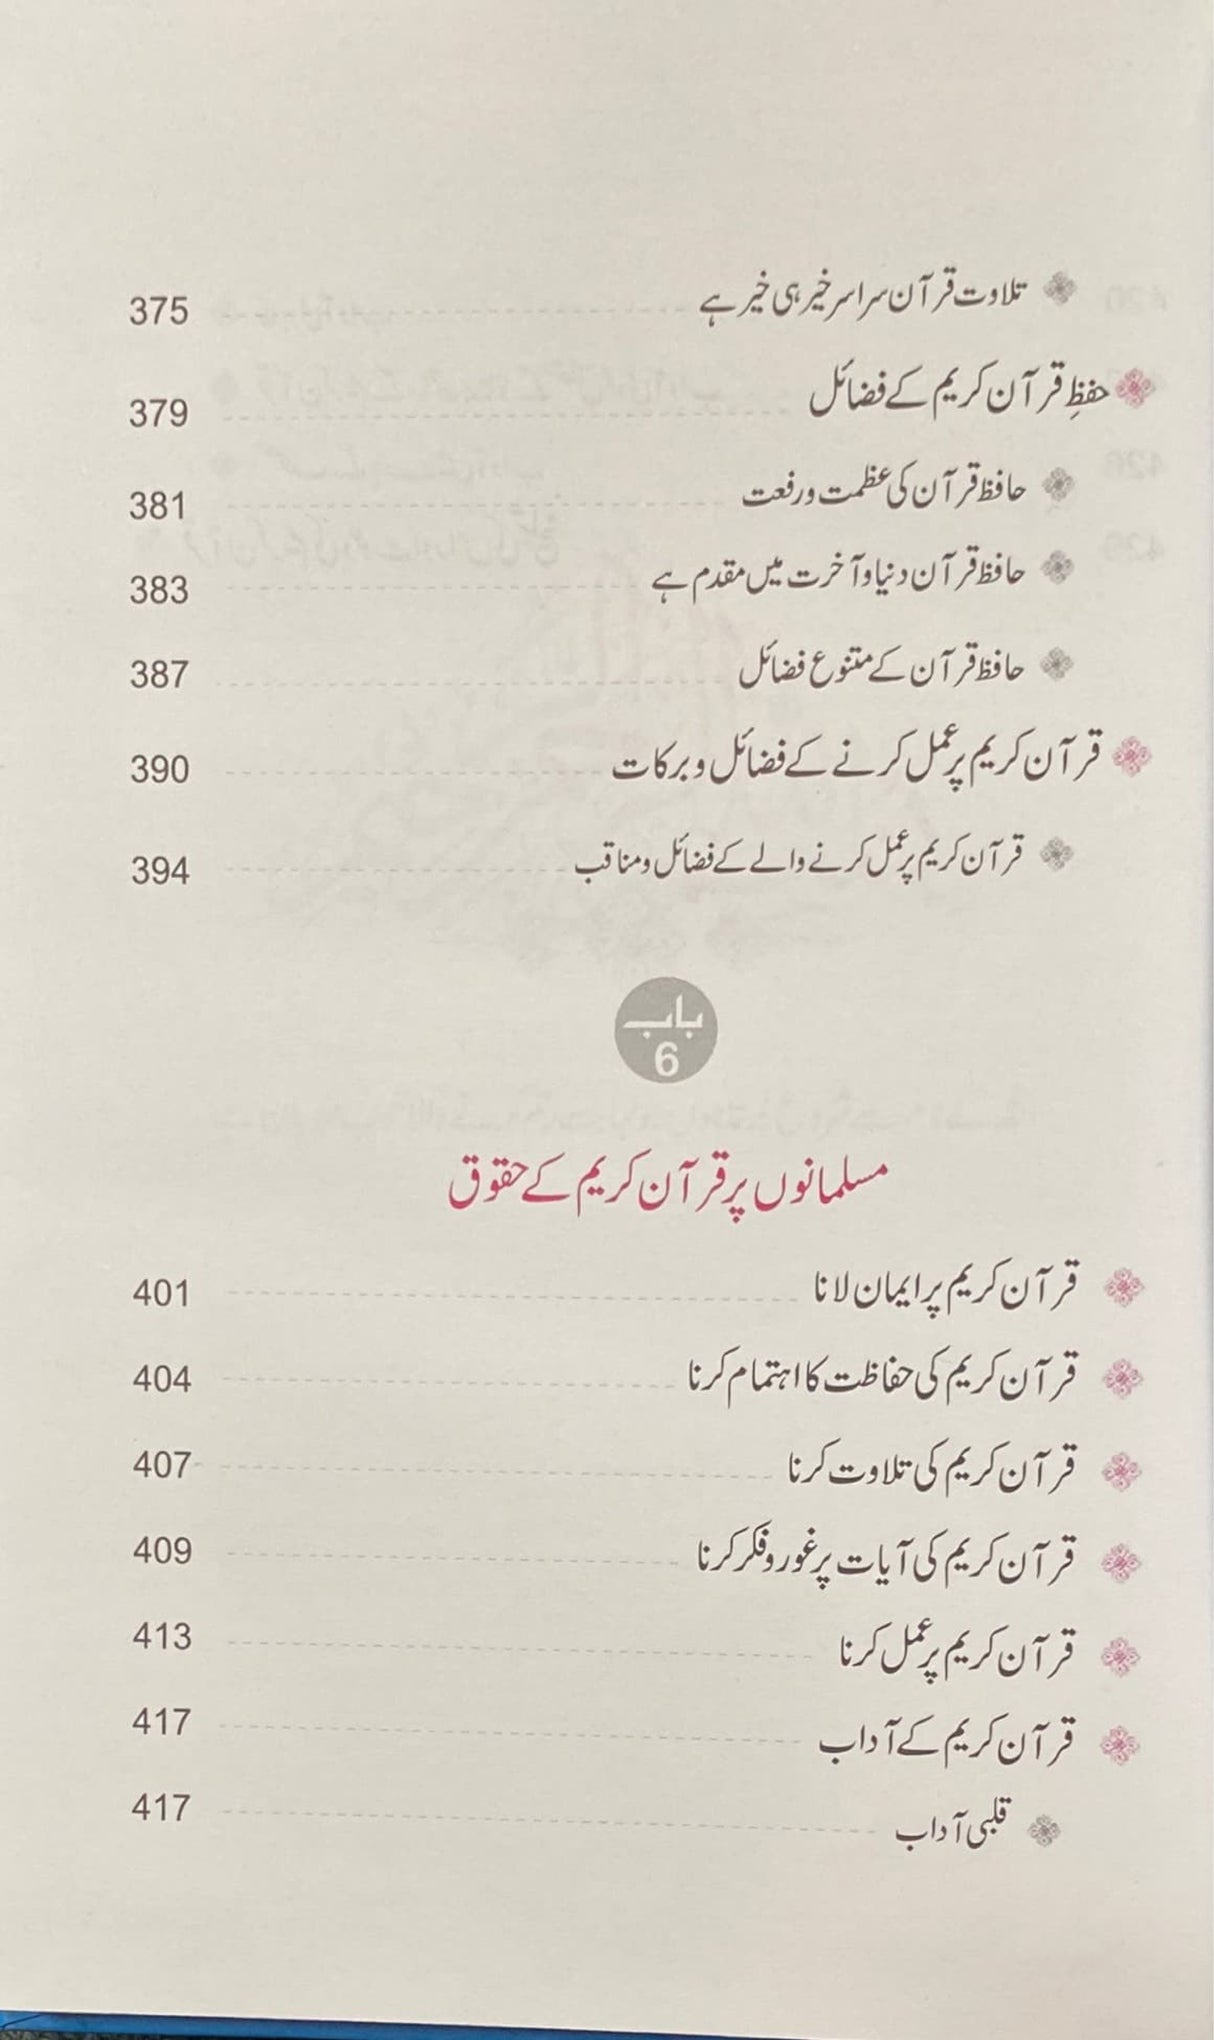 Urdu Quran Ke Athmeti Awr Uska Mujeze